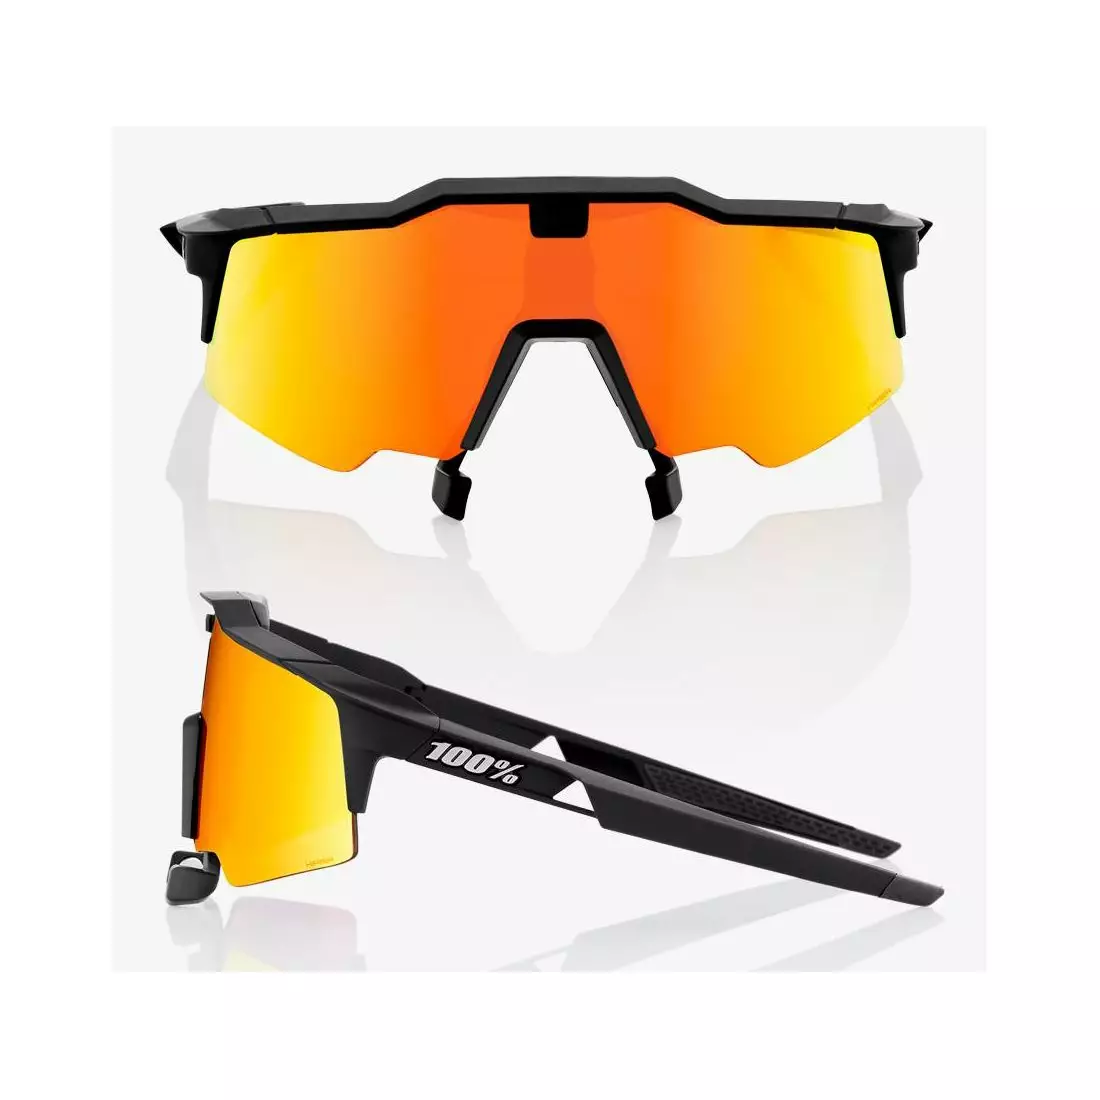 100% ochelari sport speedcraft air soft tact negru HiPER roșu lentilă oglindă multistrat + lentilă transparentă STO-61004-100-43